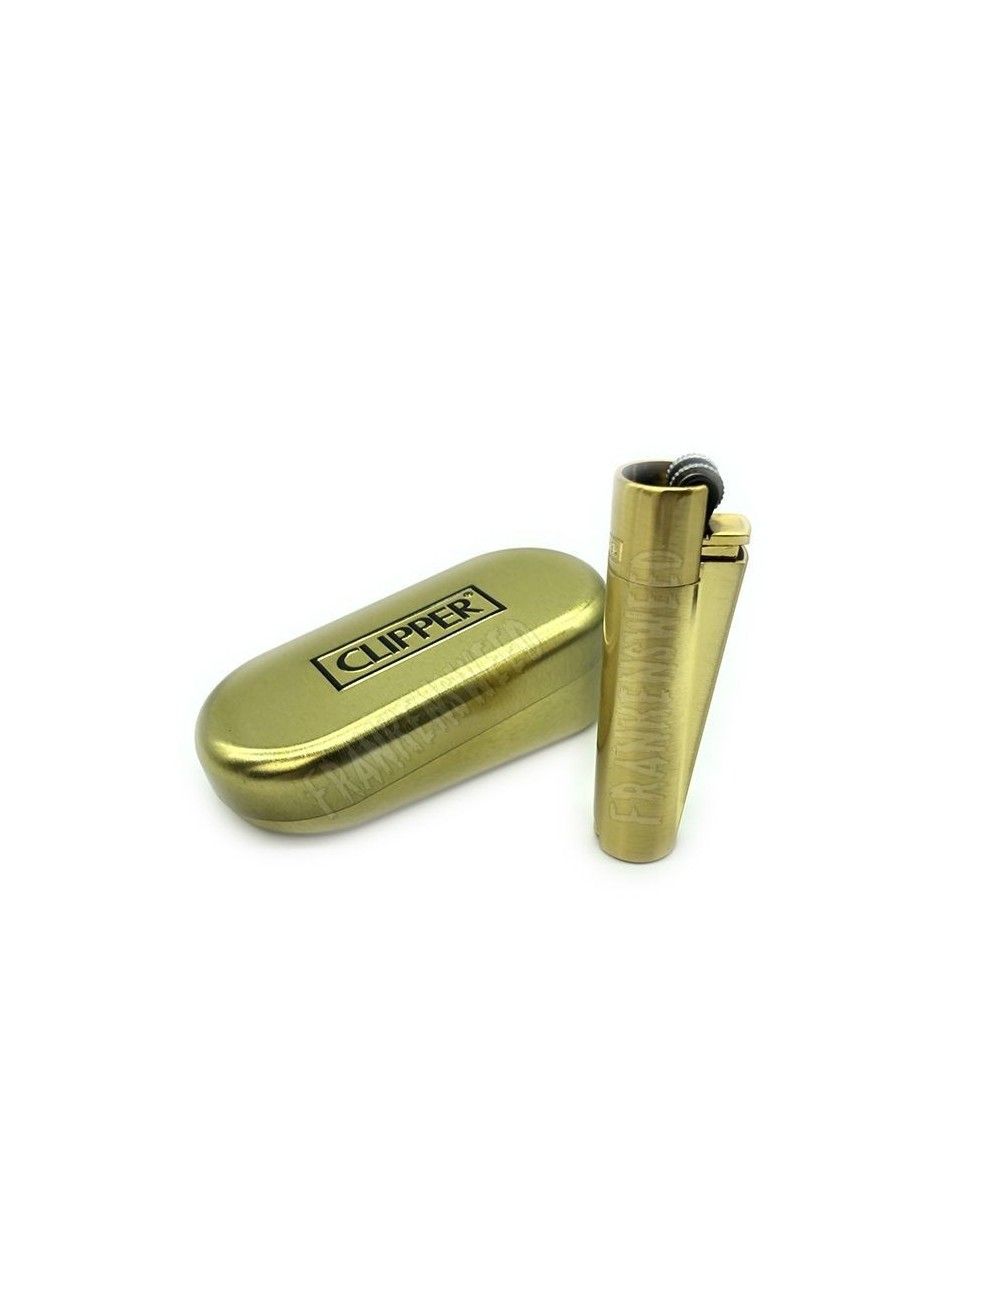 Clipper Metal Lighter Gold